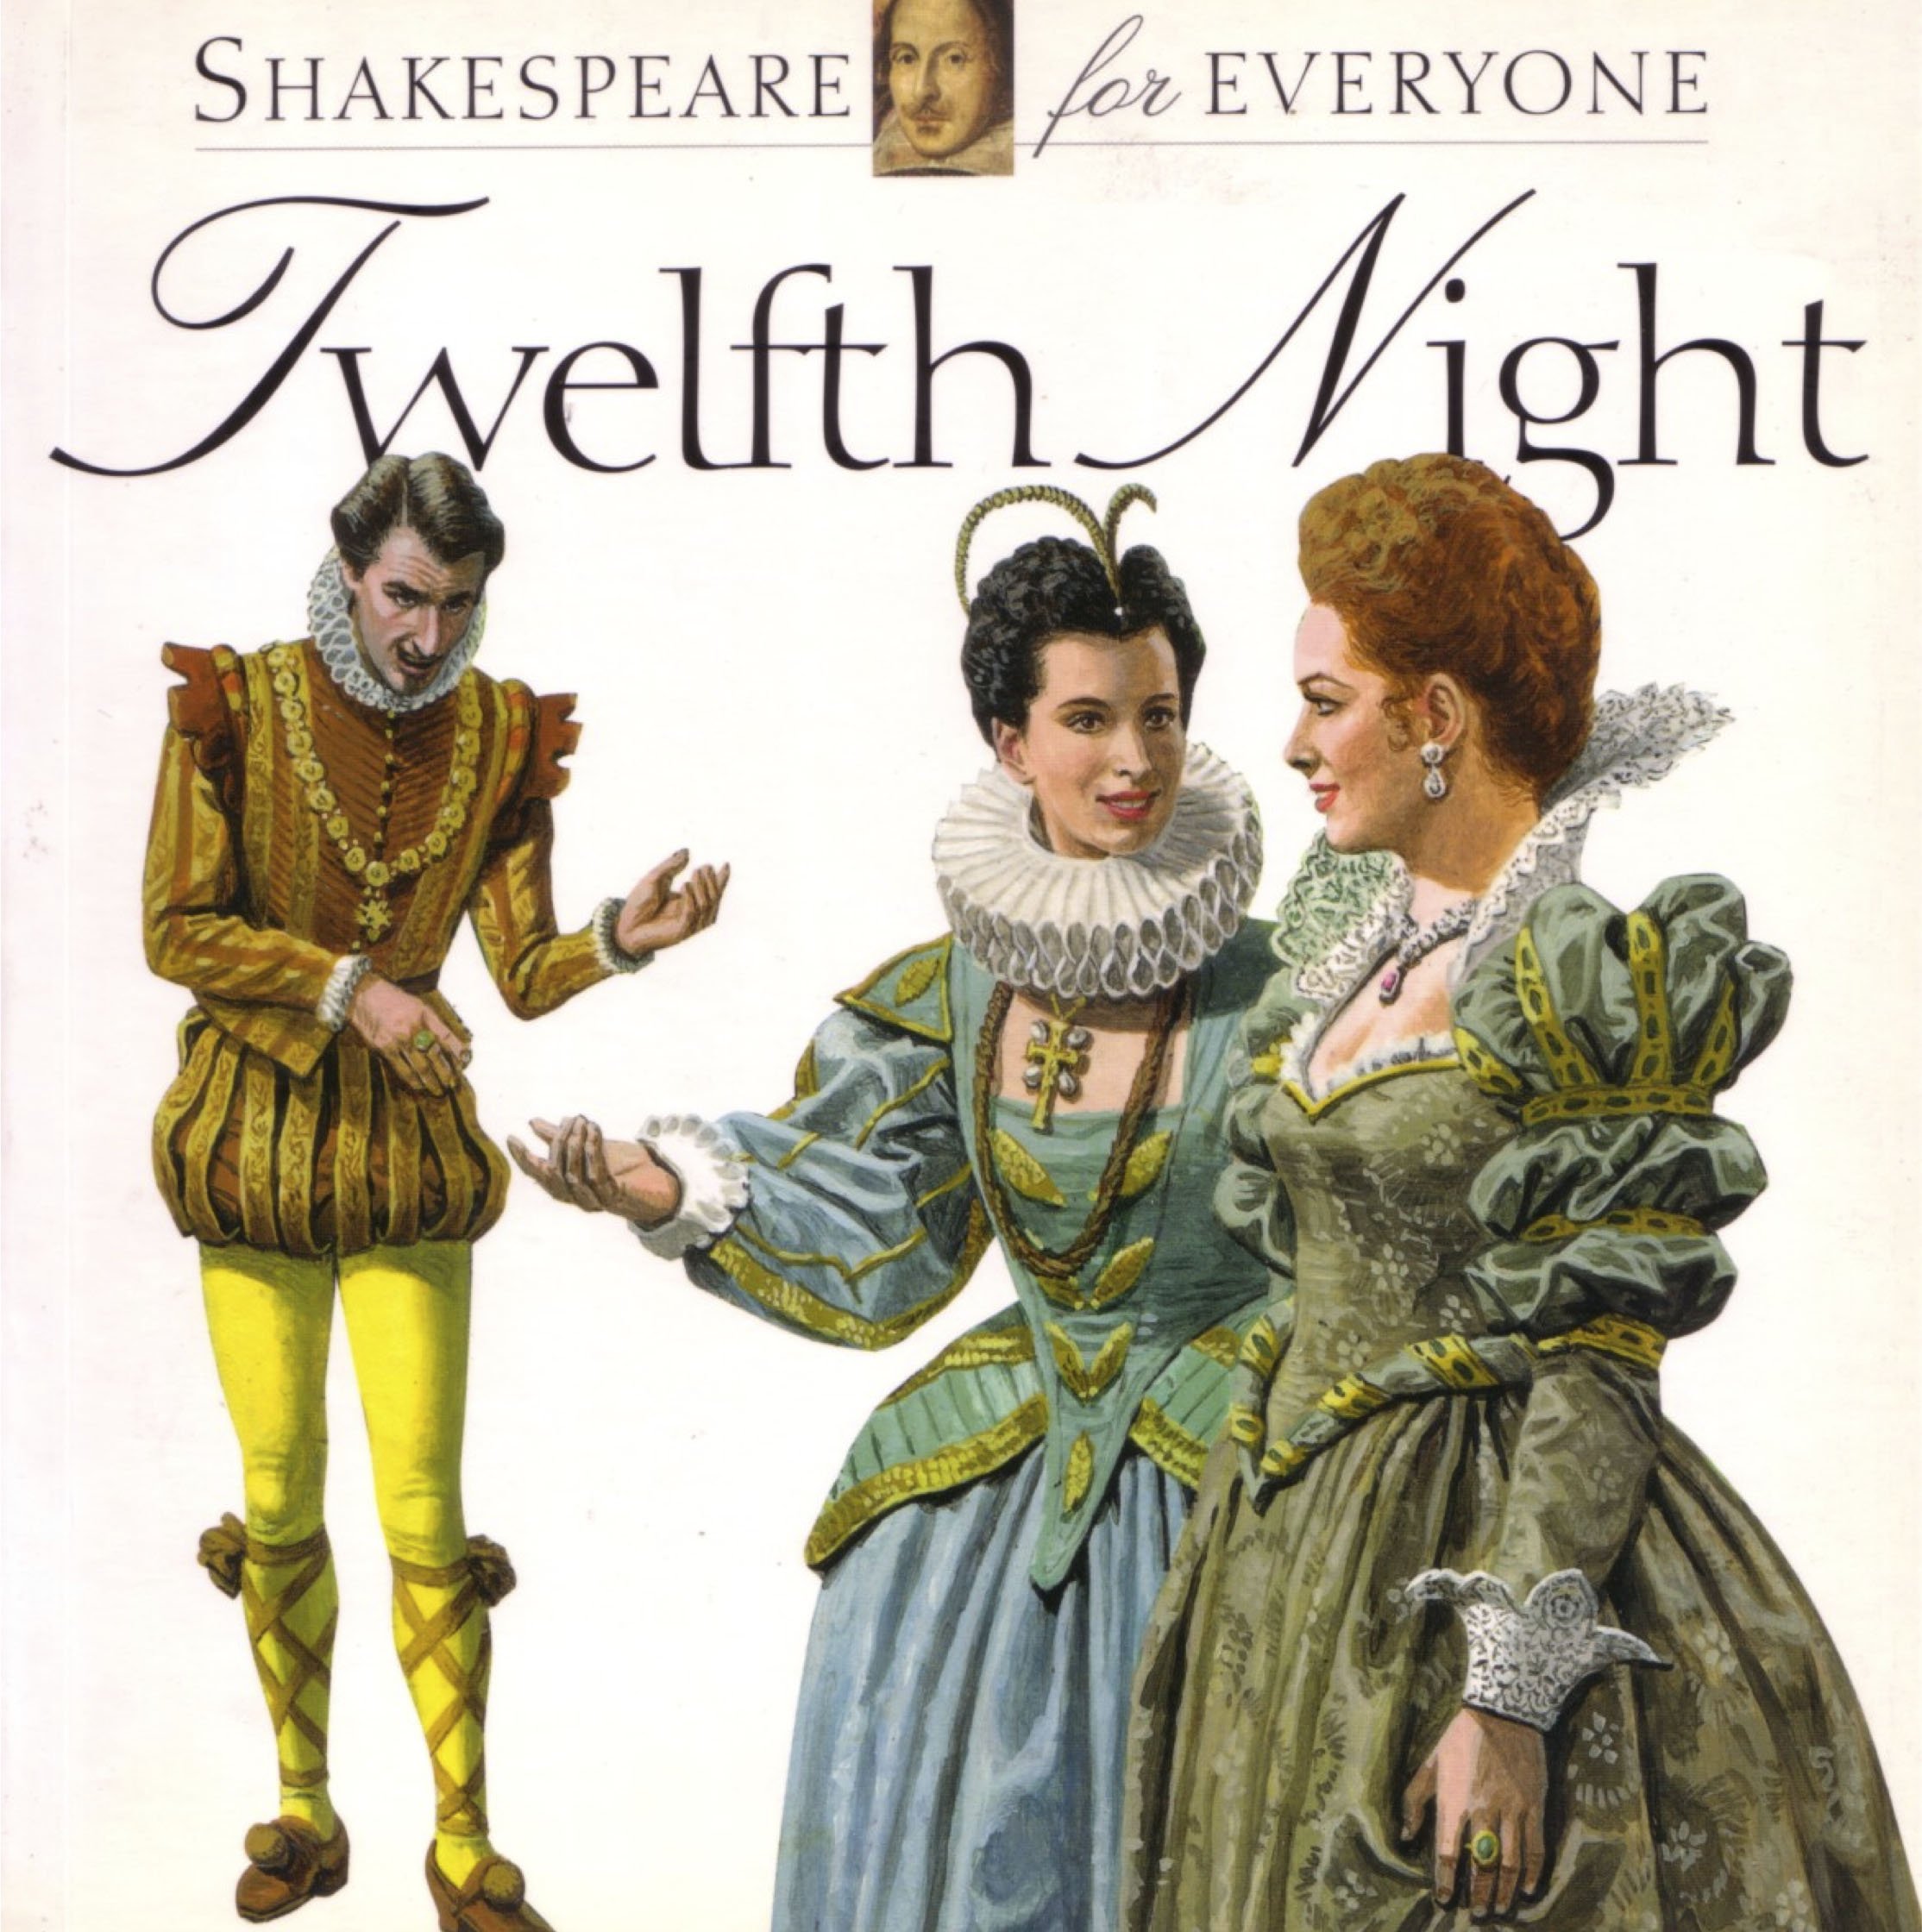 12 ночи на английском. 12 Ночь Шекспир иллюстрации. Двенадцатая ночь Шекспир Виола. Уильям Шекспир двенадцатая ночь. Двенадцатая ночь иллюстрации.